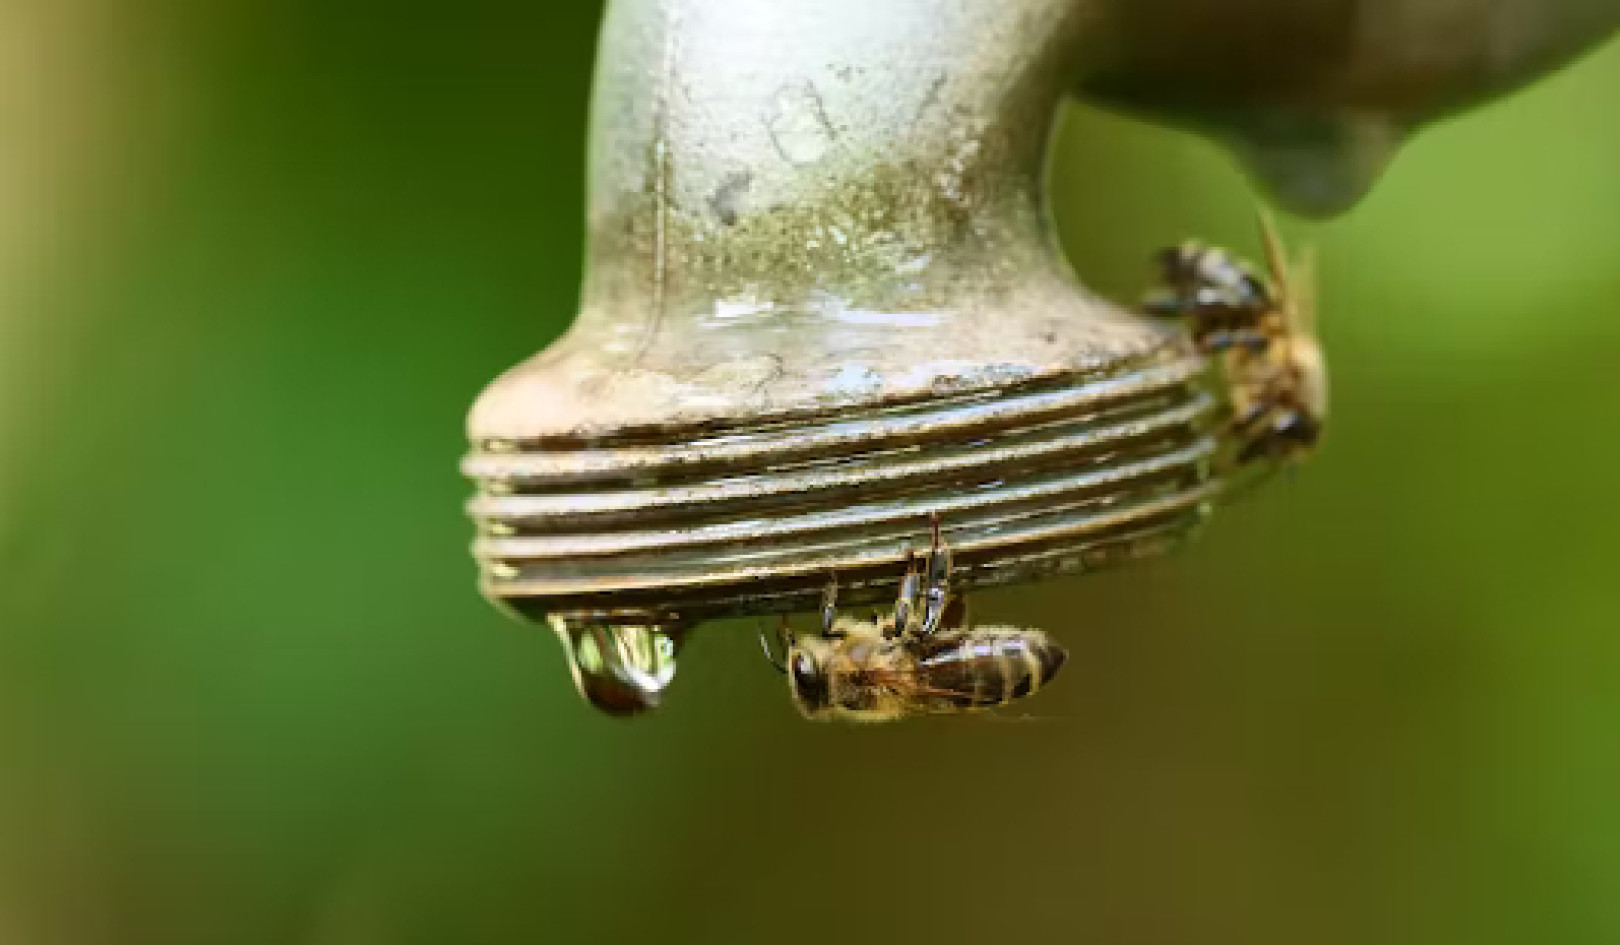 Пчелы сталкиваются со многими проблемами, и изменение климата усиливает давление